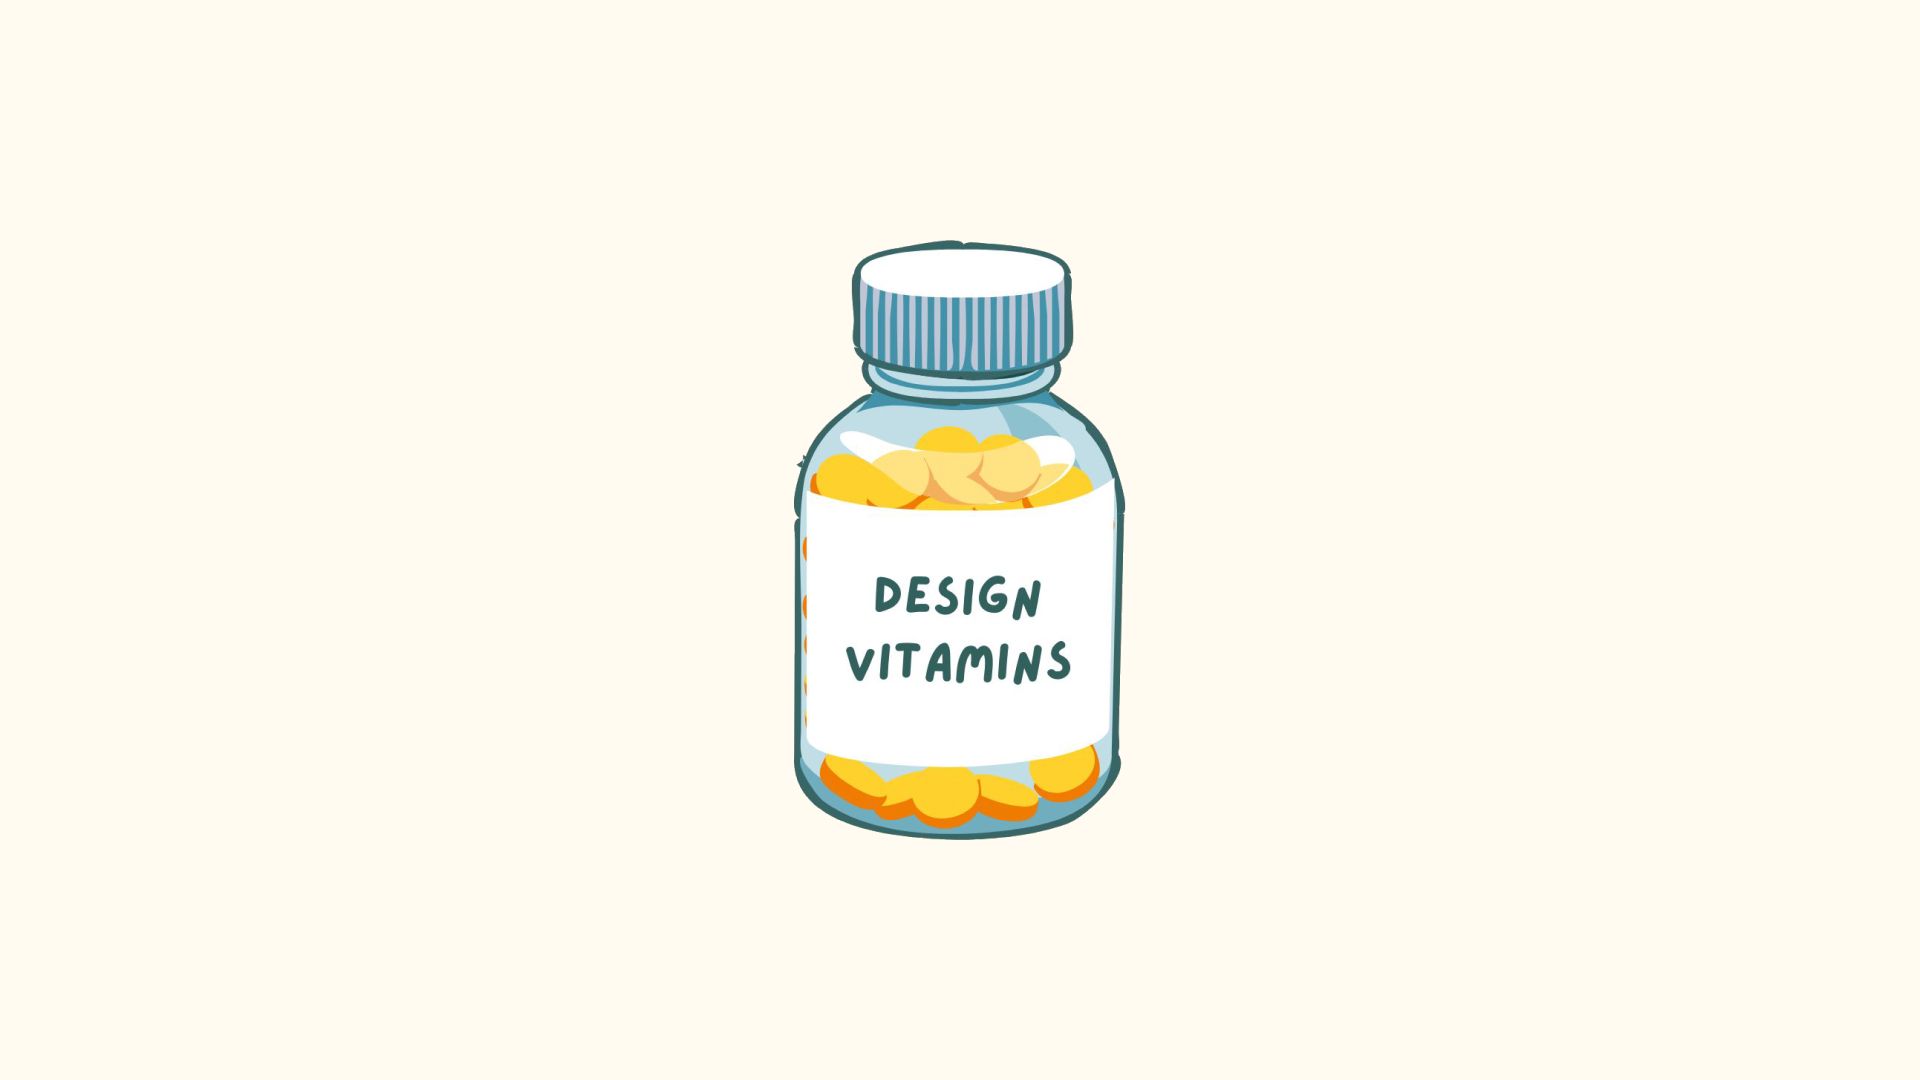 Introducing: Design Vitamins